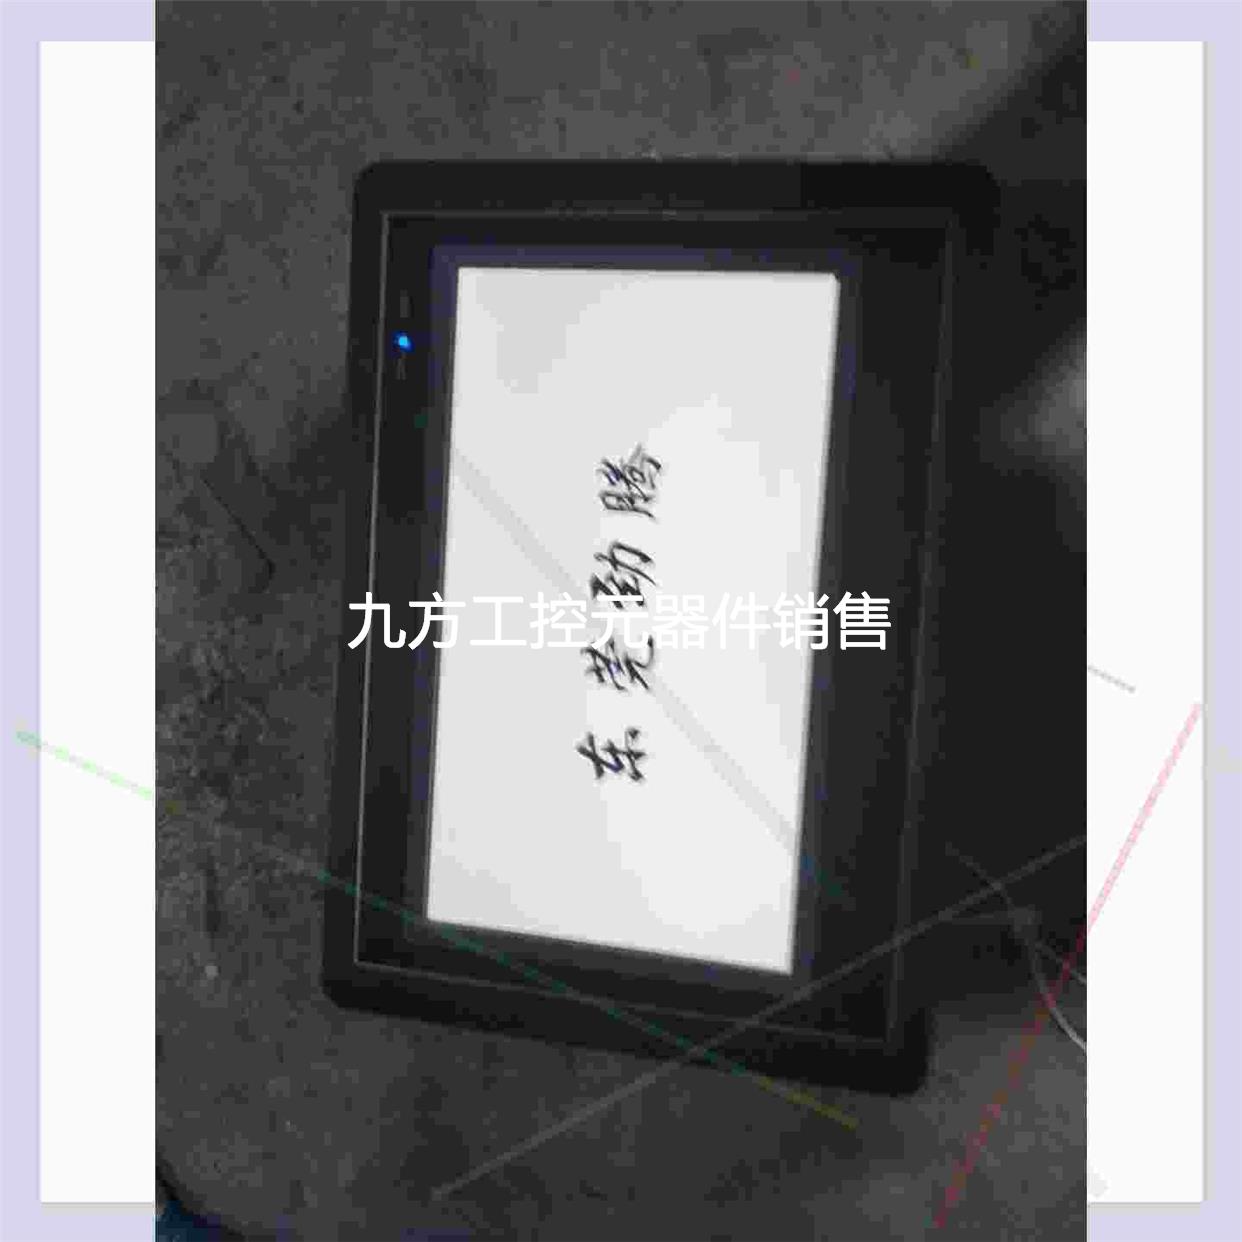 议价触摸屏上海繁易ACT4070CE一个，通电如图成色如新实物拍